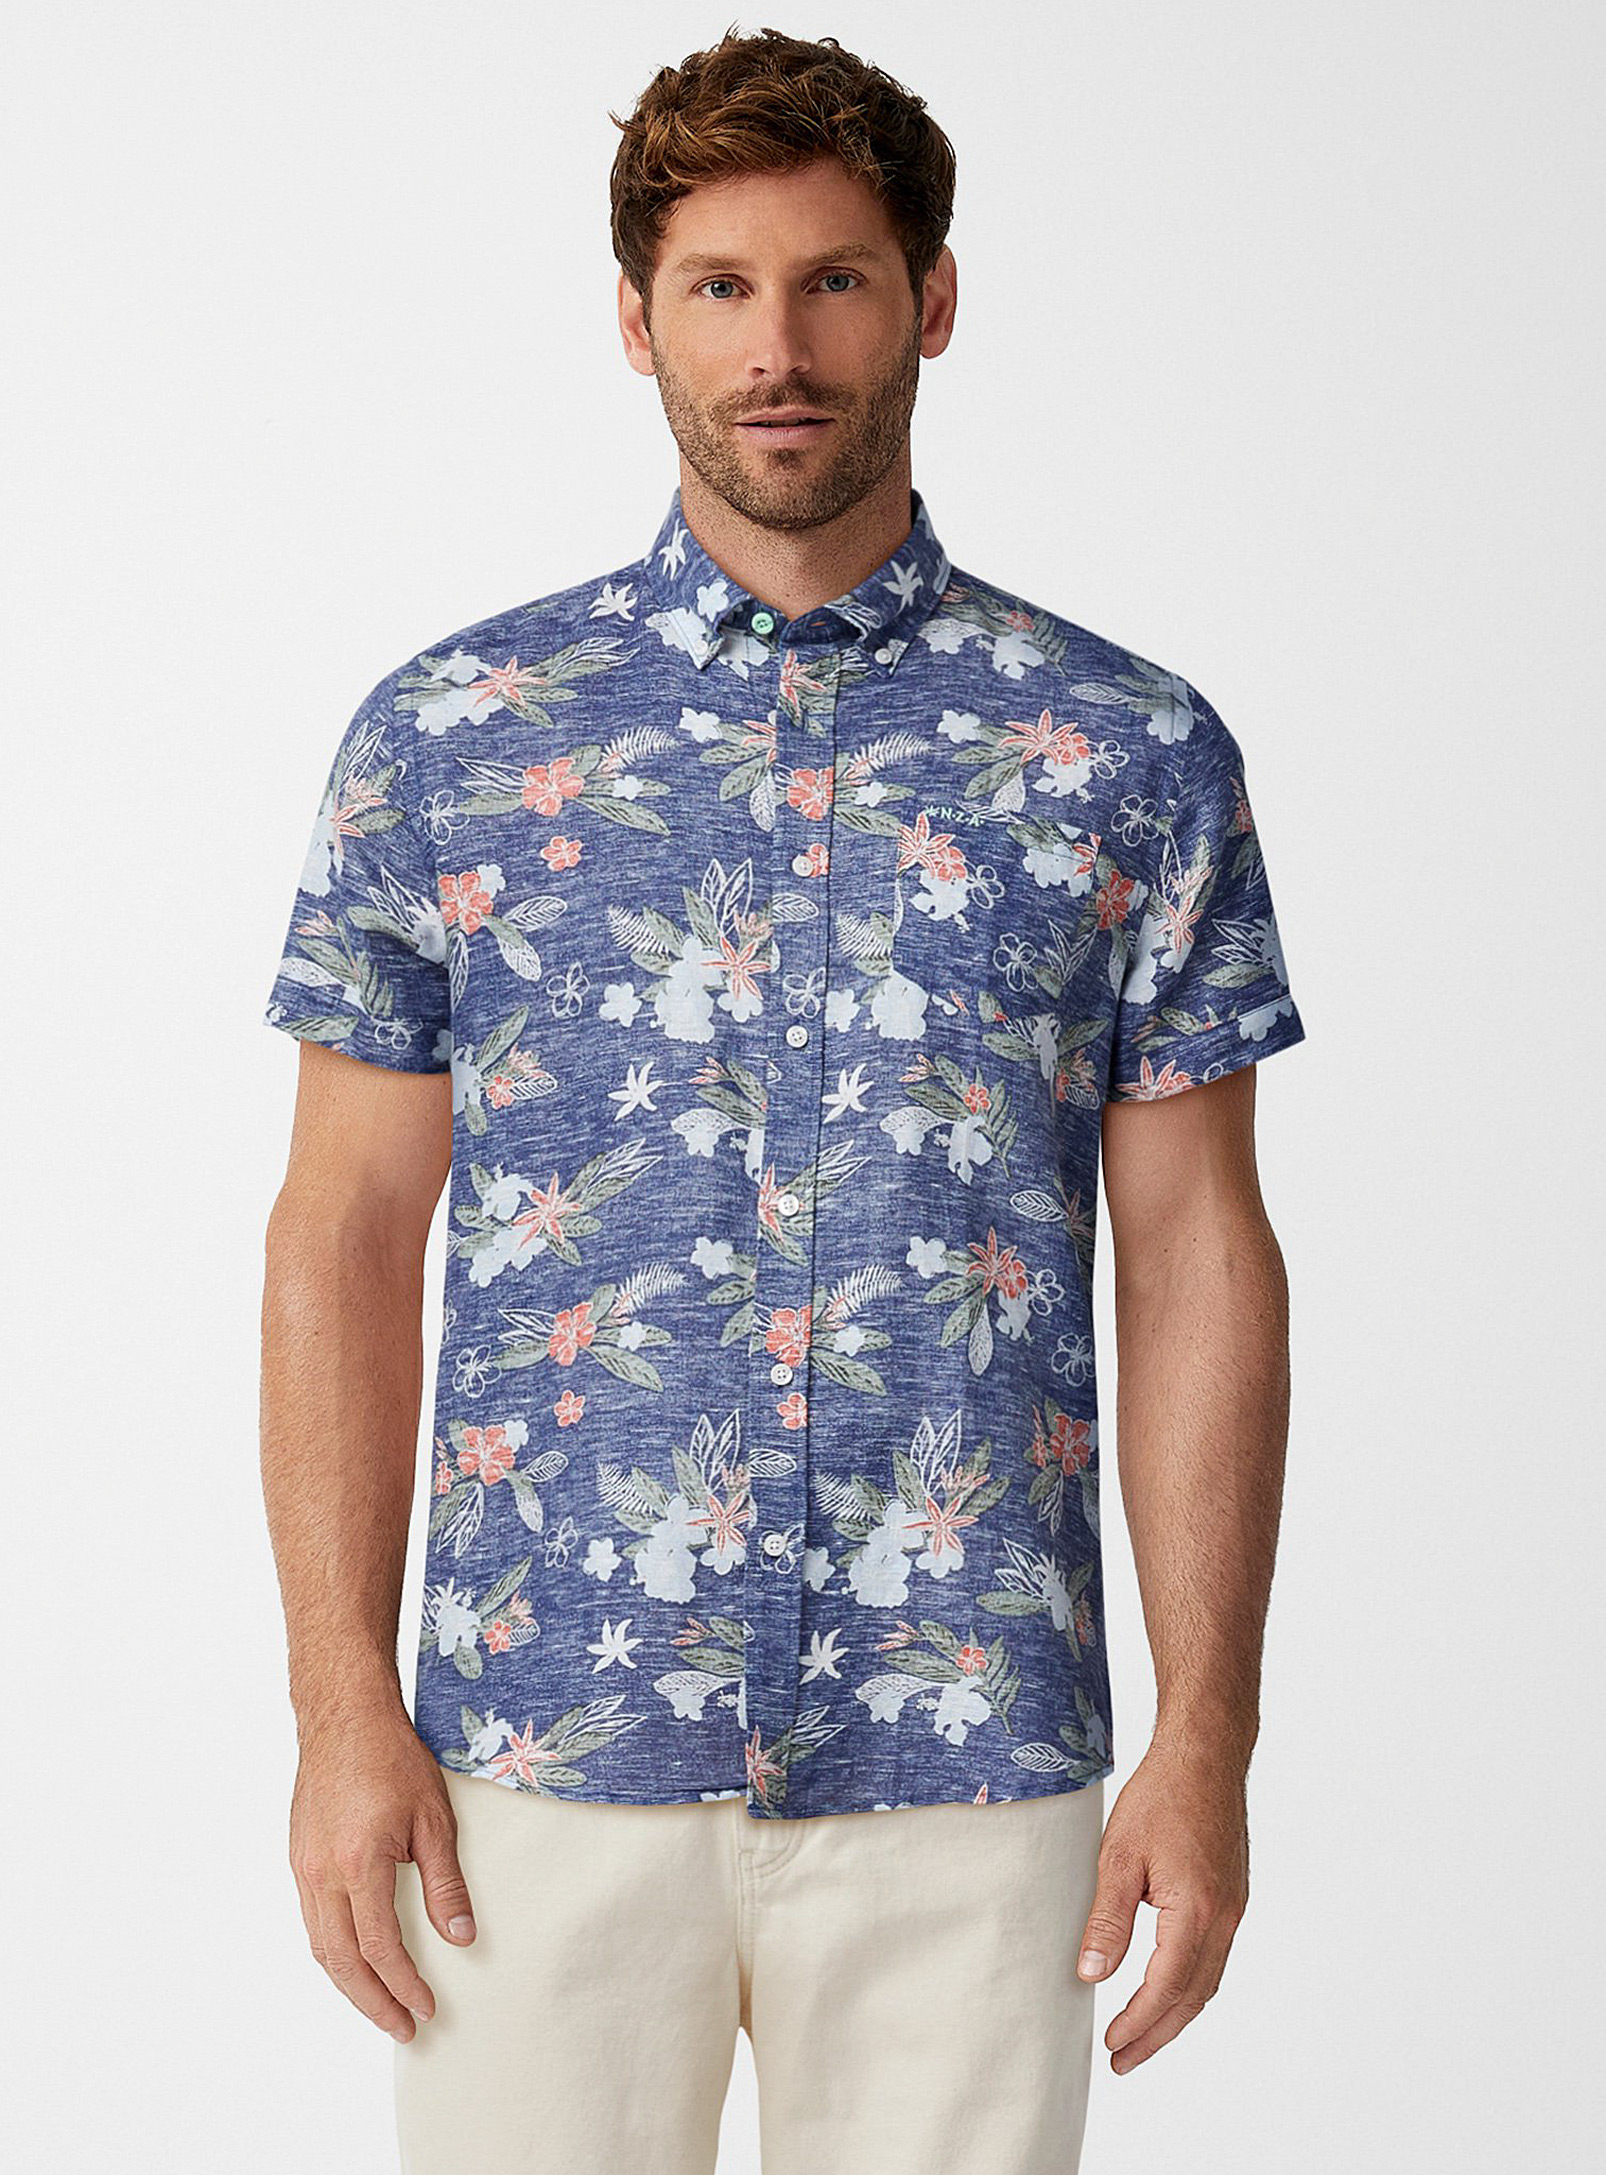 New Zealand Auckland - Men's Island flower shirt